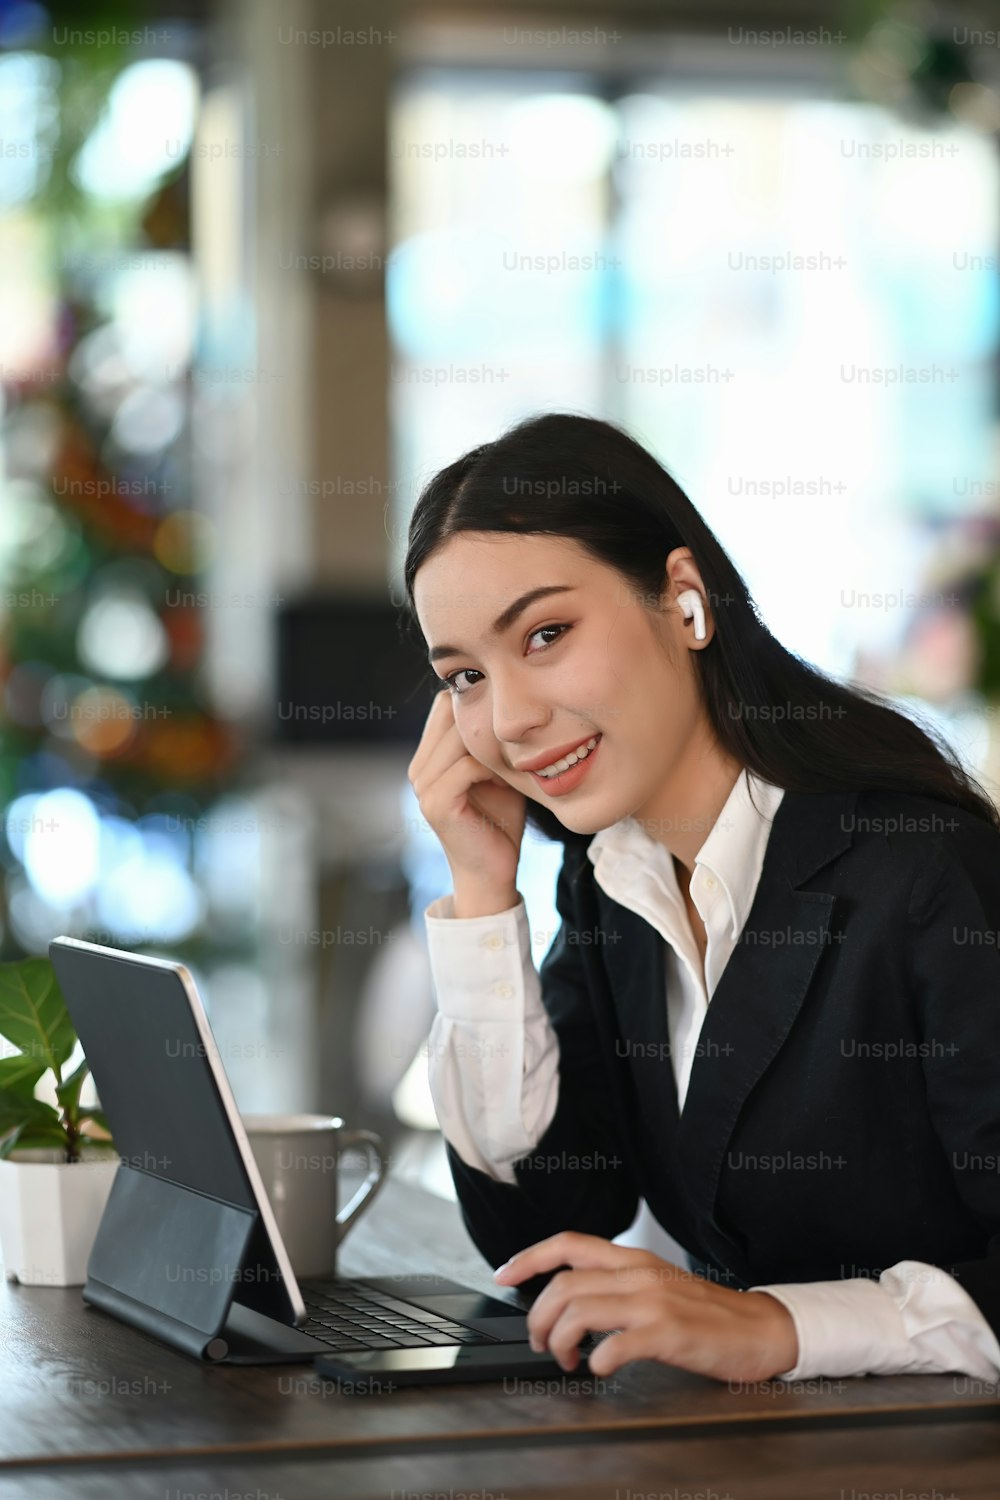 Retrato de uma jovem empresária com fones de ouvido sem fio está sorrindo para a câmera enquanto trabalha em seu local de trabalho.